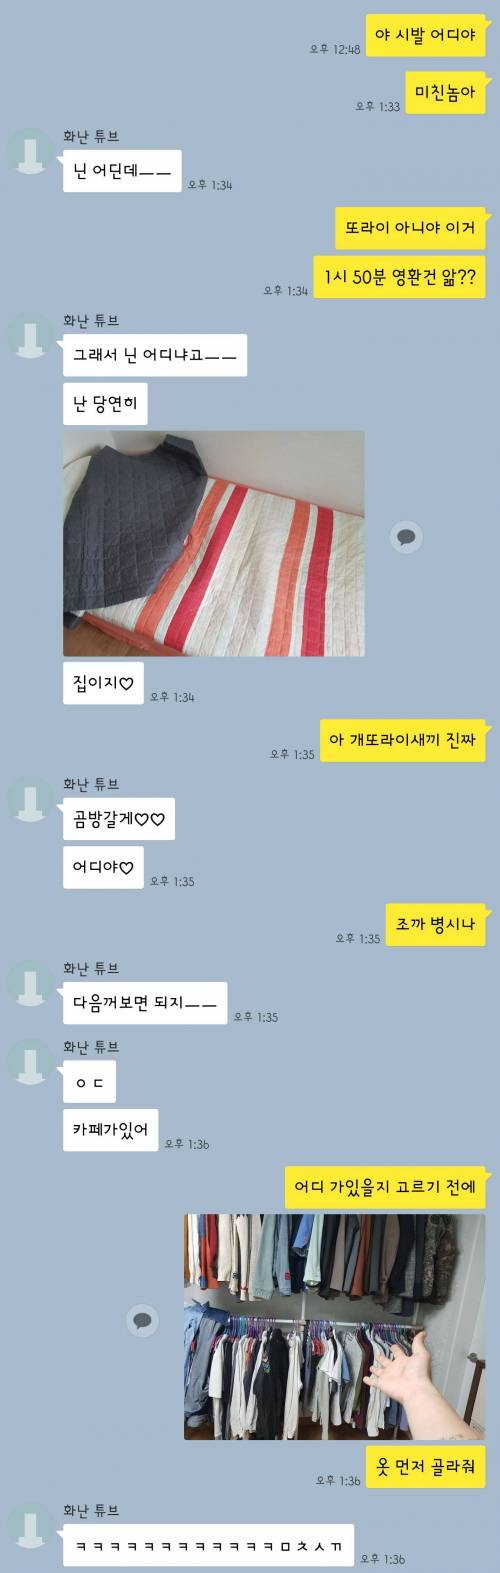 [노스포] 친구랑 데드풀2 본 후기.jpg